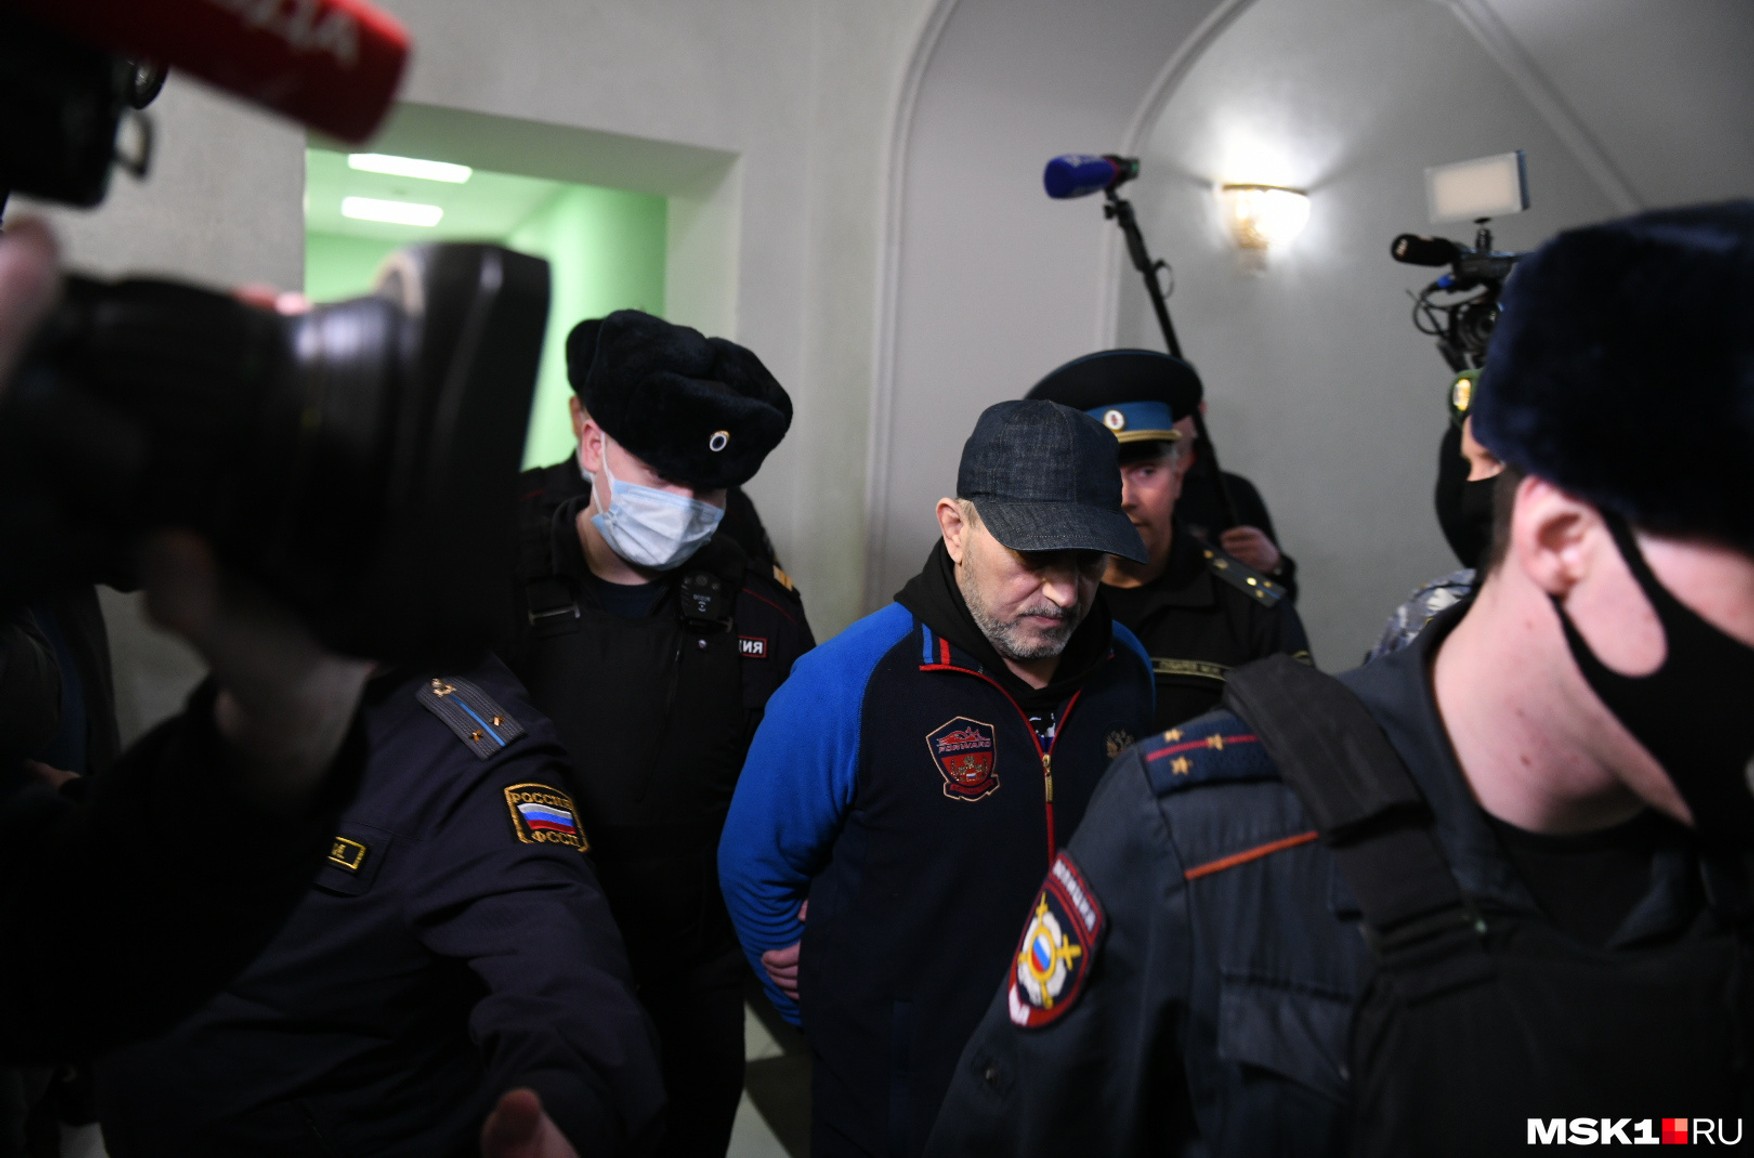 Дагестанского экс-полицейского приговорили к пожизненному заключению за теракты в московском метро